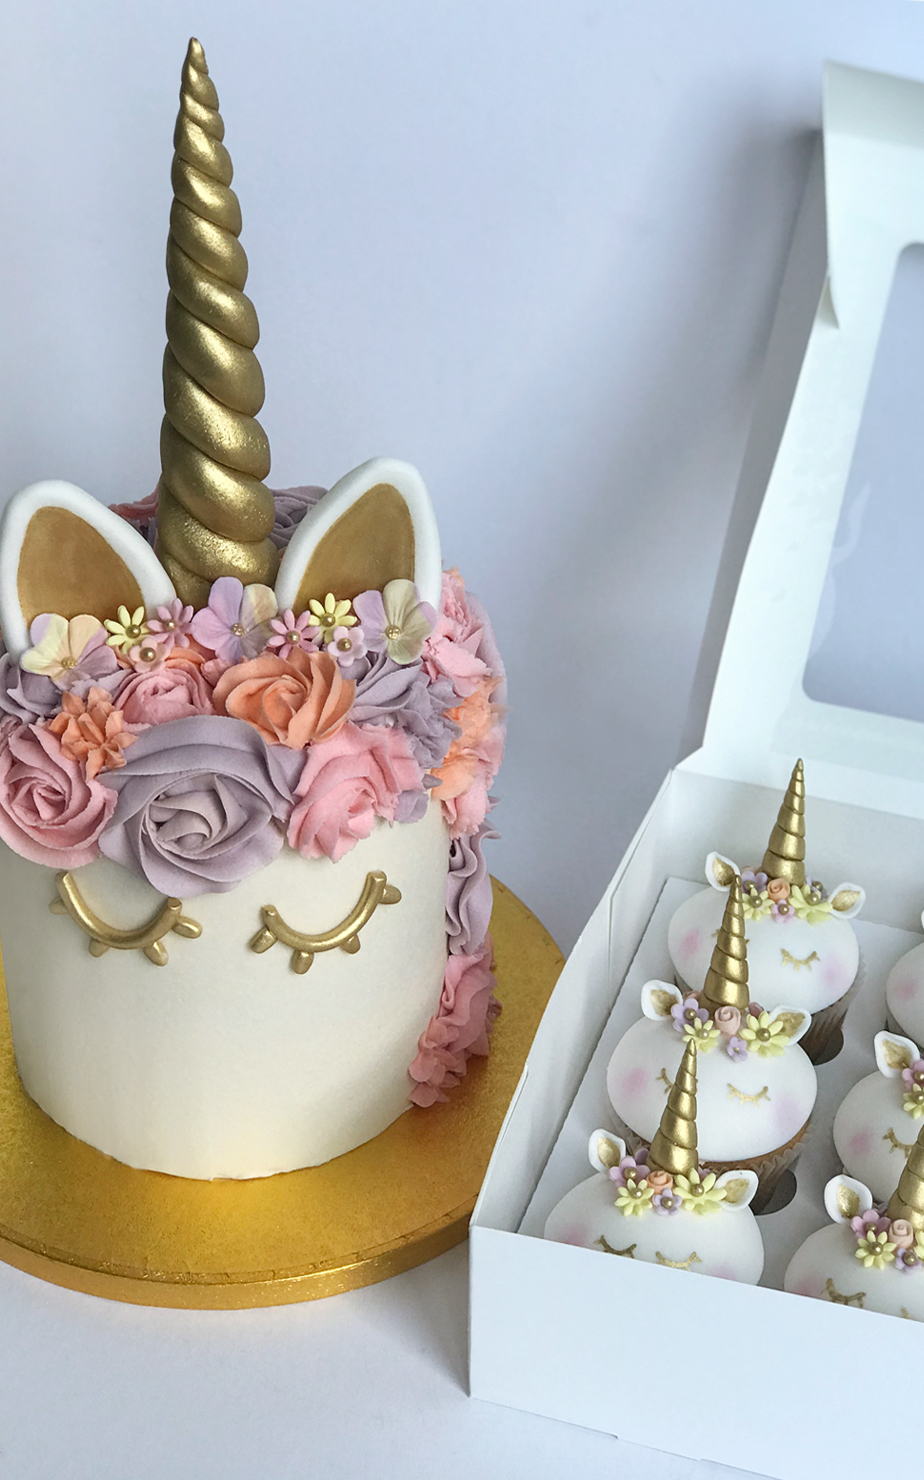 unicorn cakes, drip cakes celebration cakes | Antonias cake shop Liverpool